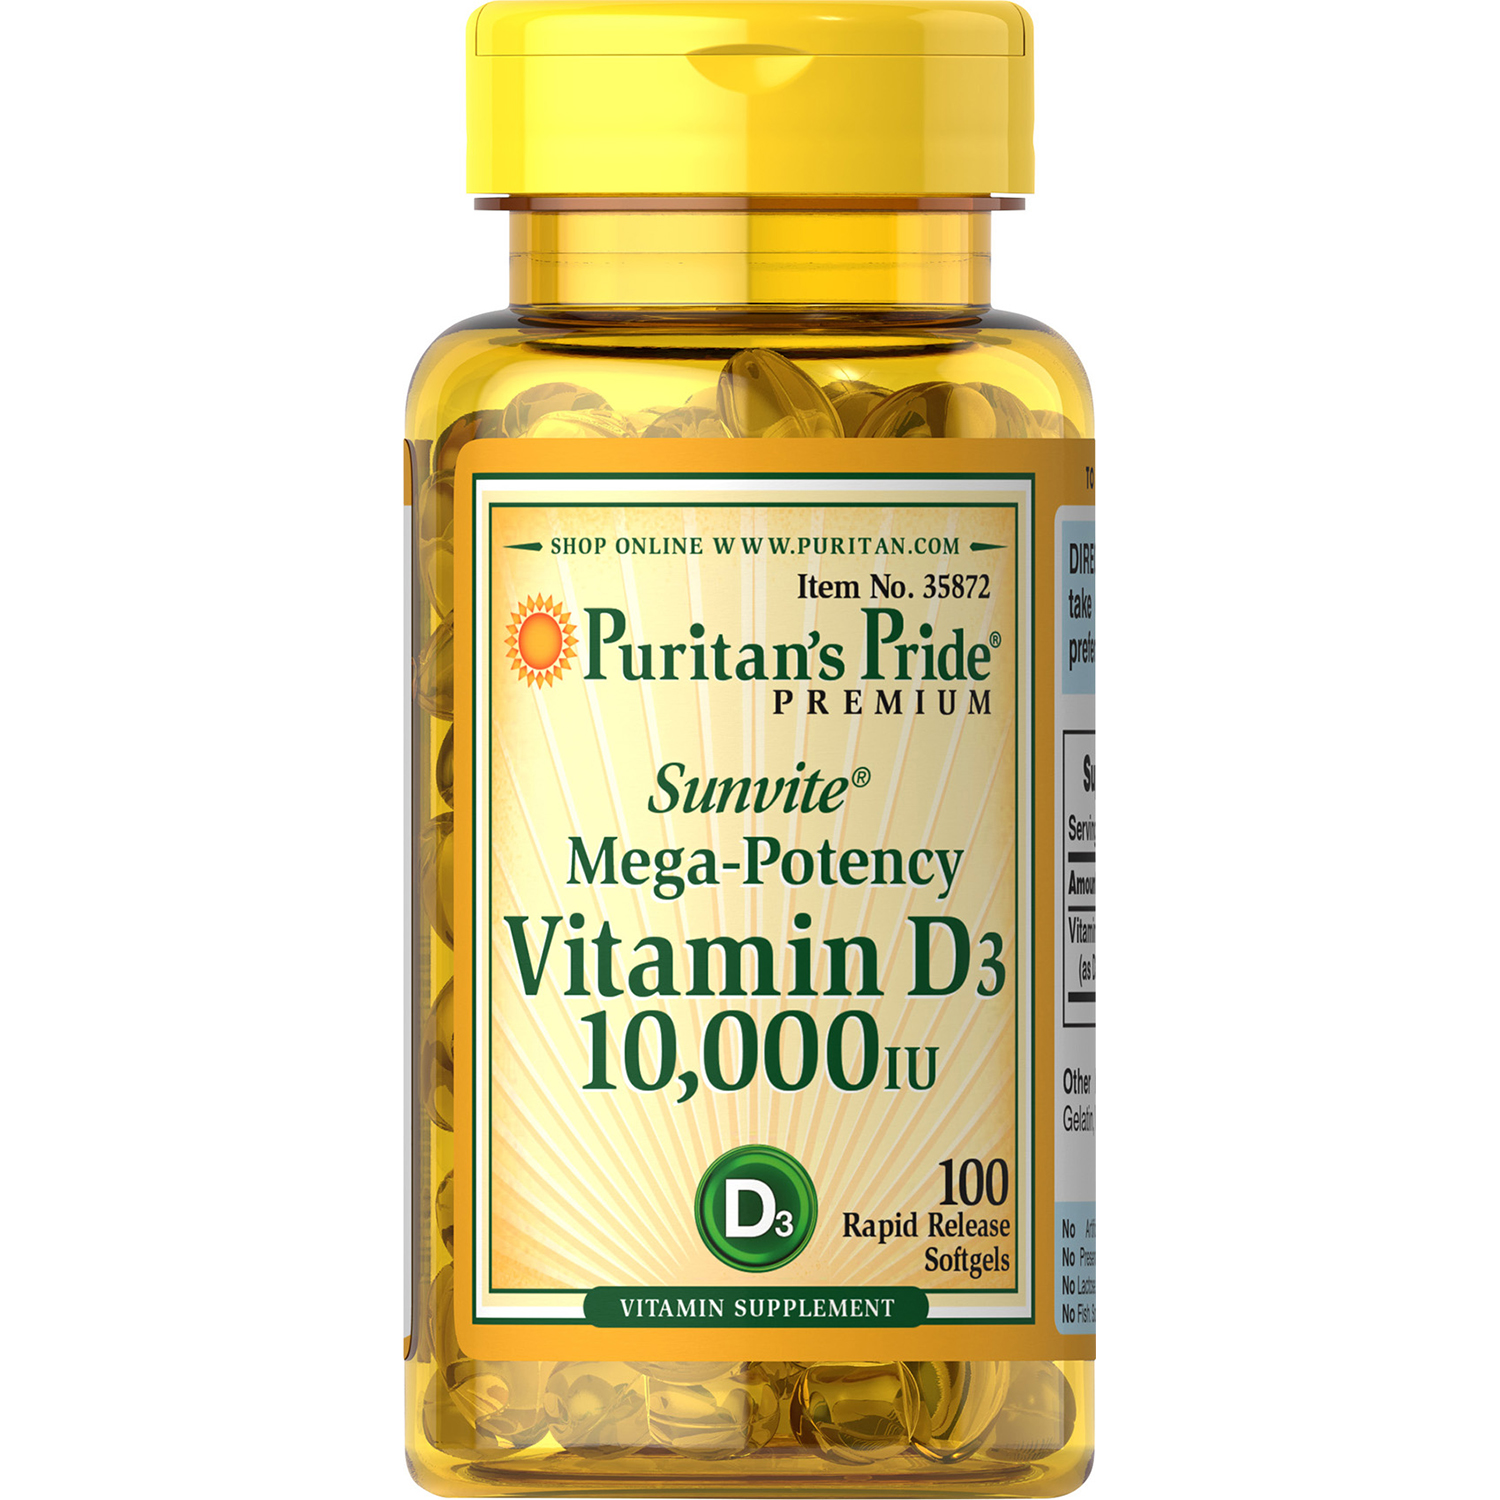 Puritan's Pride Vitamin D3 Softgels, 10000IU, 100Ct - image 1 of 3